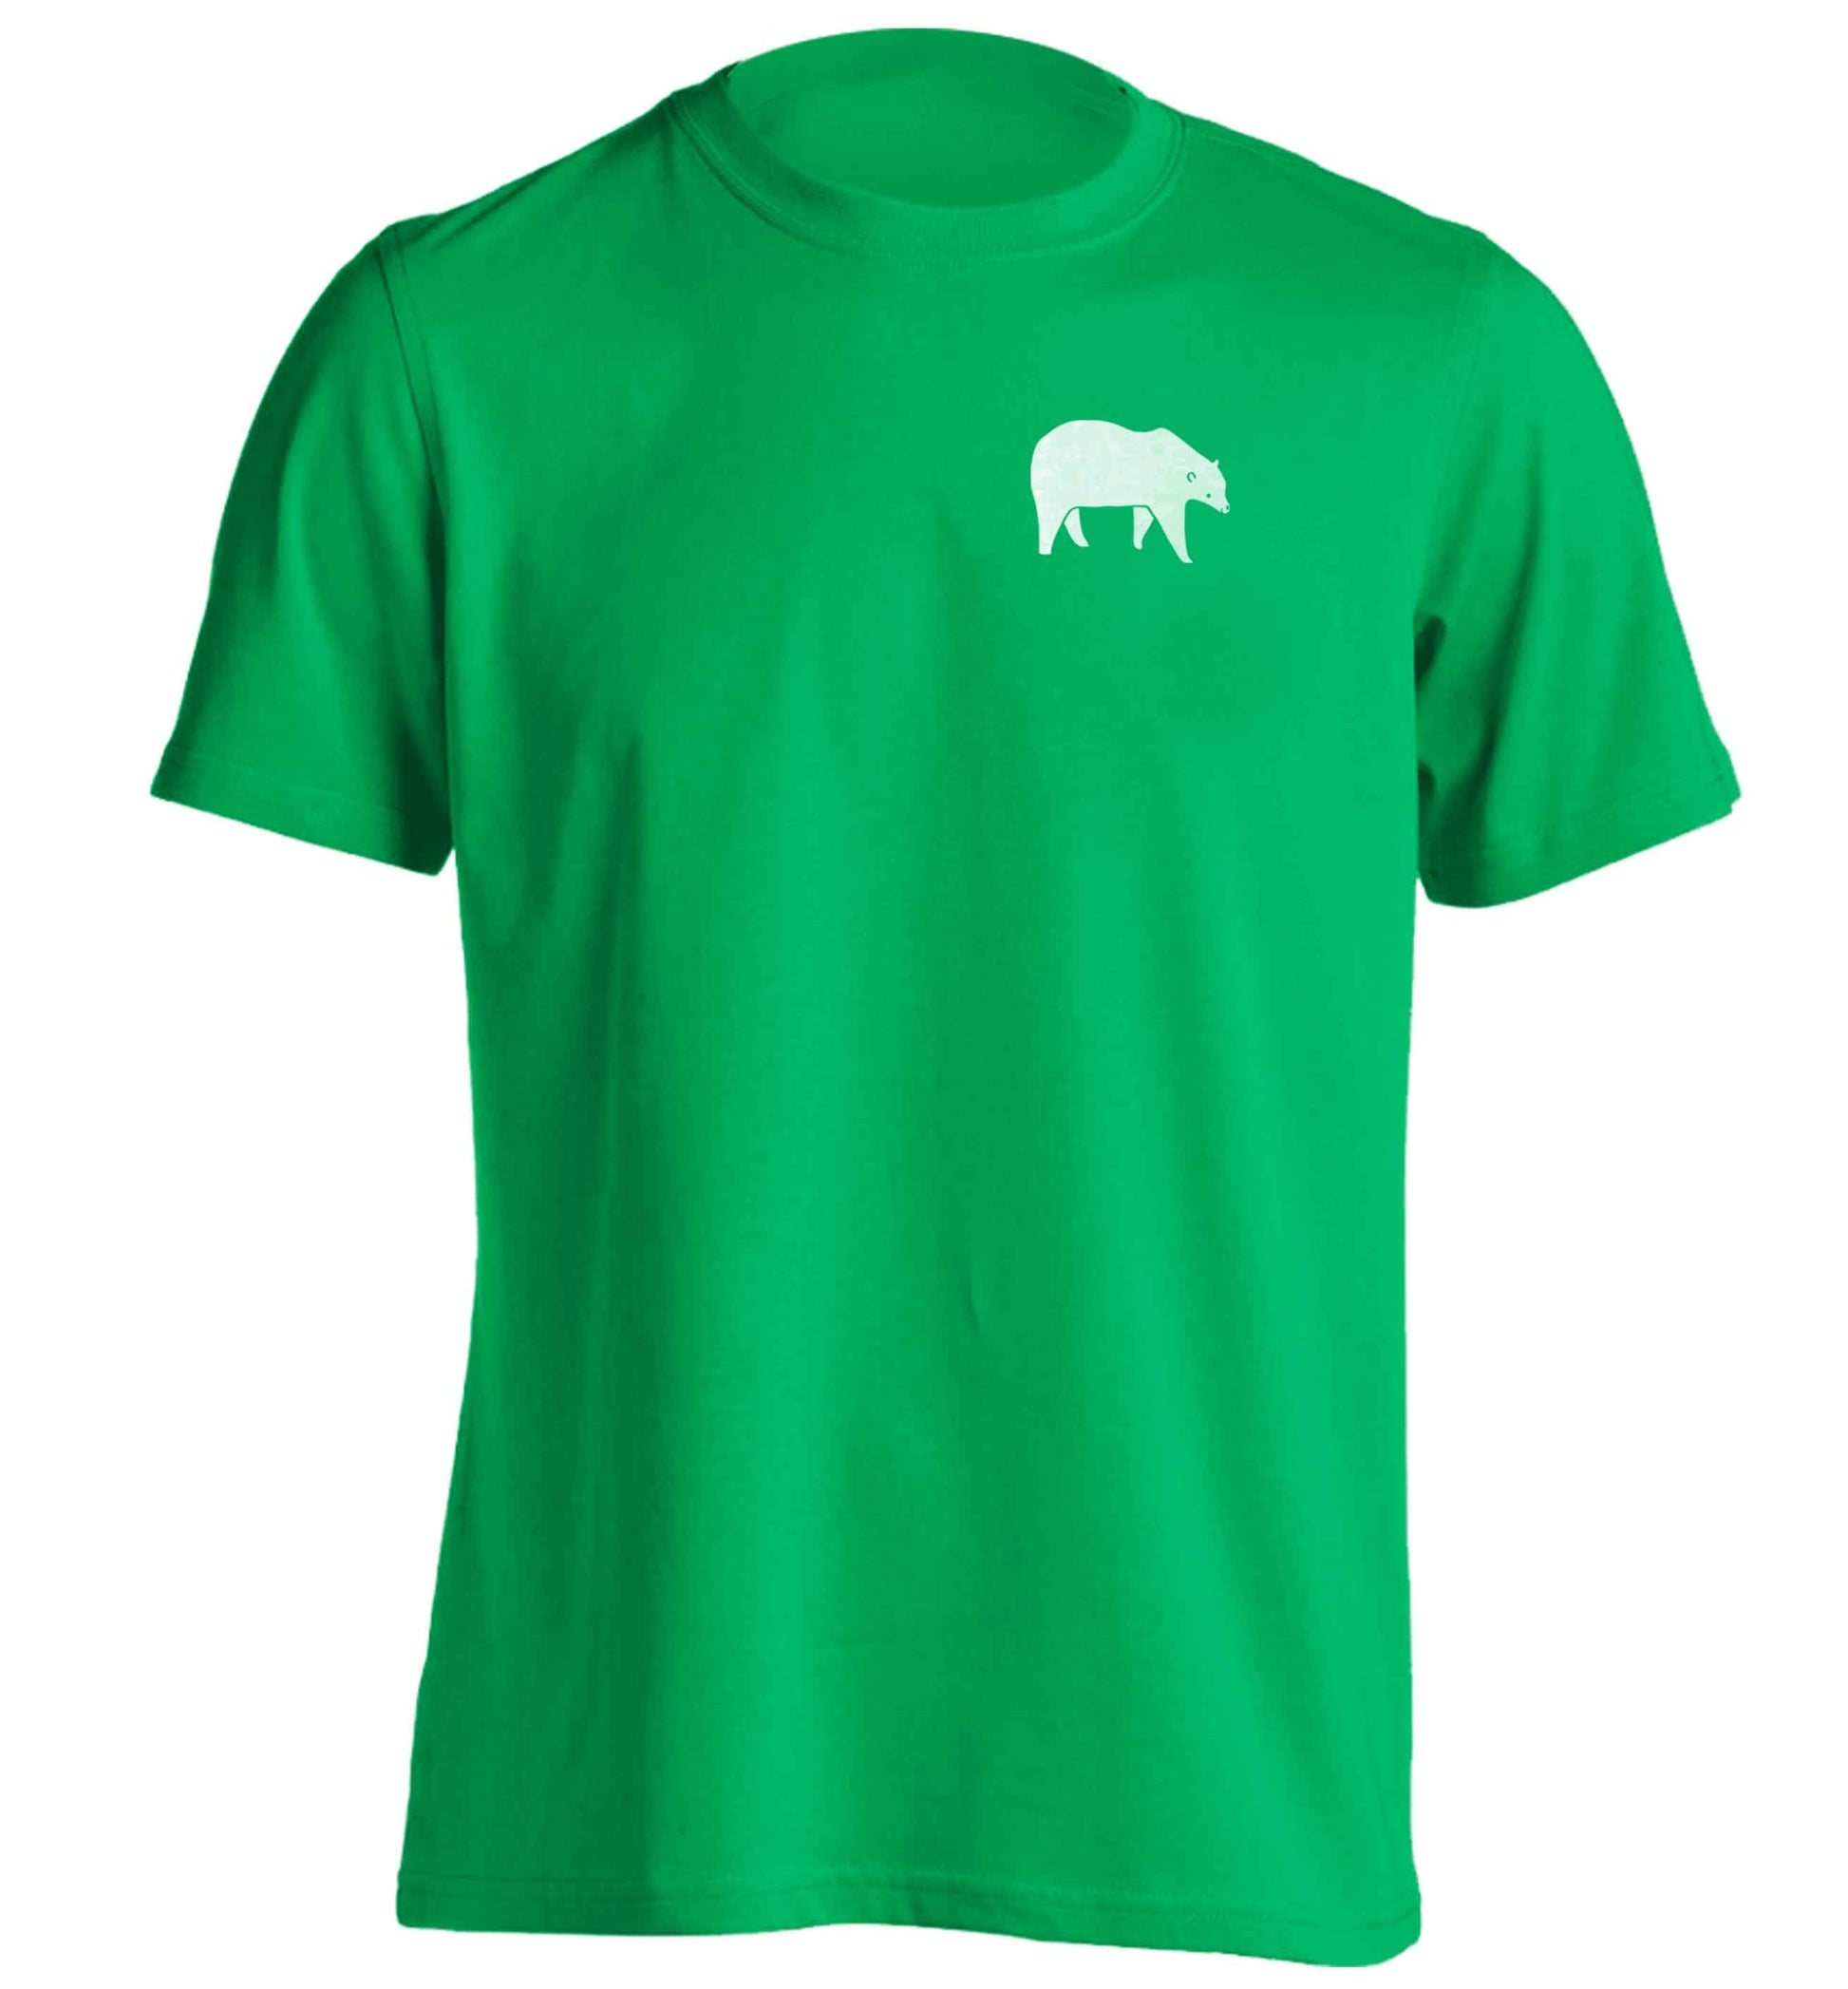 Polar Bear Kit adults unisex green Tshirt 2XL